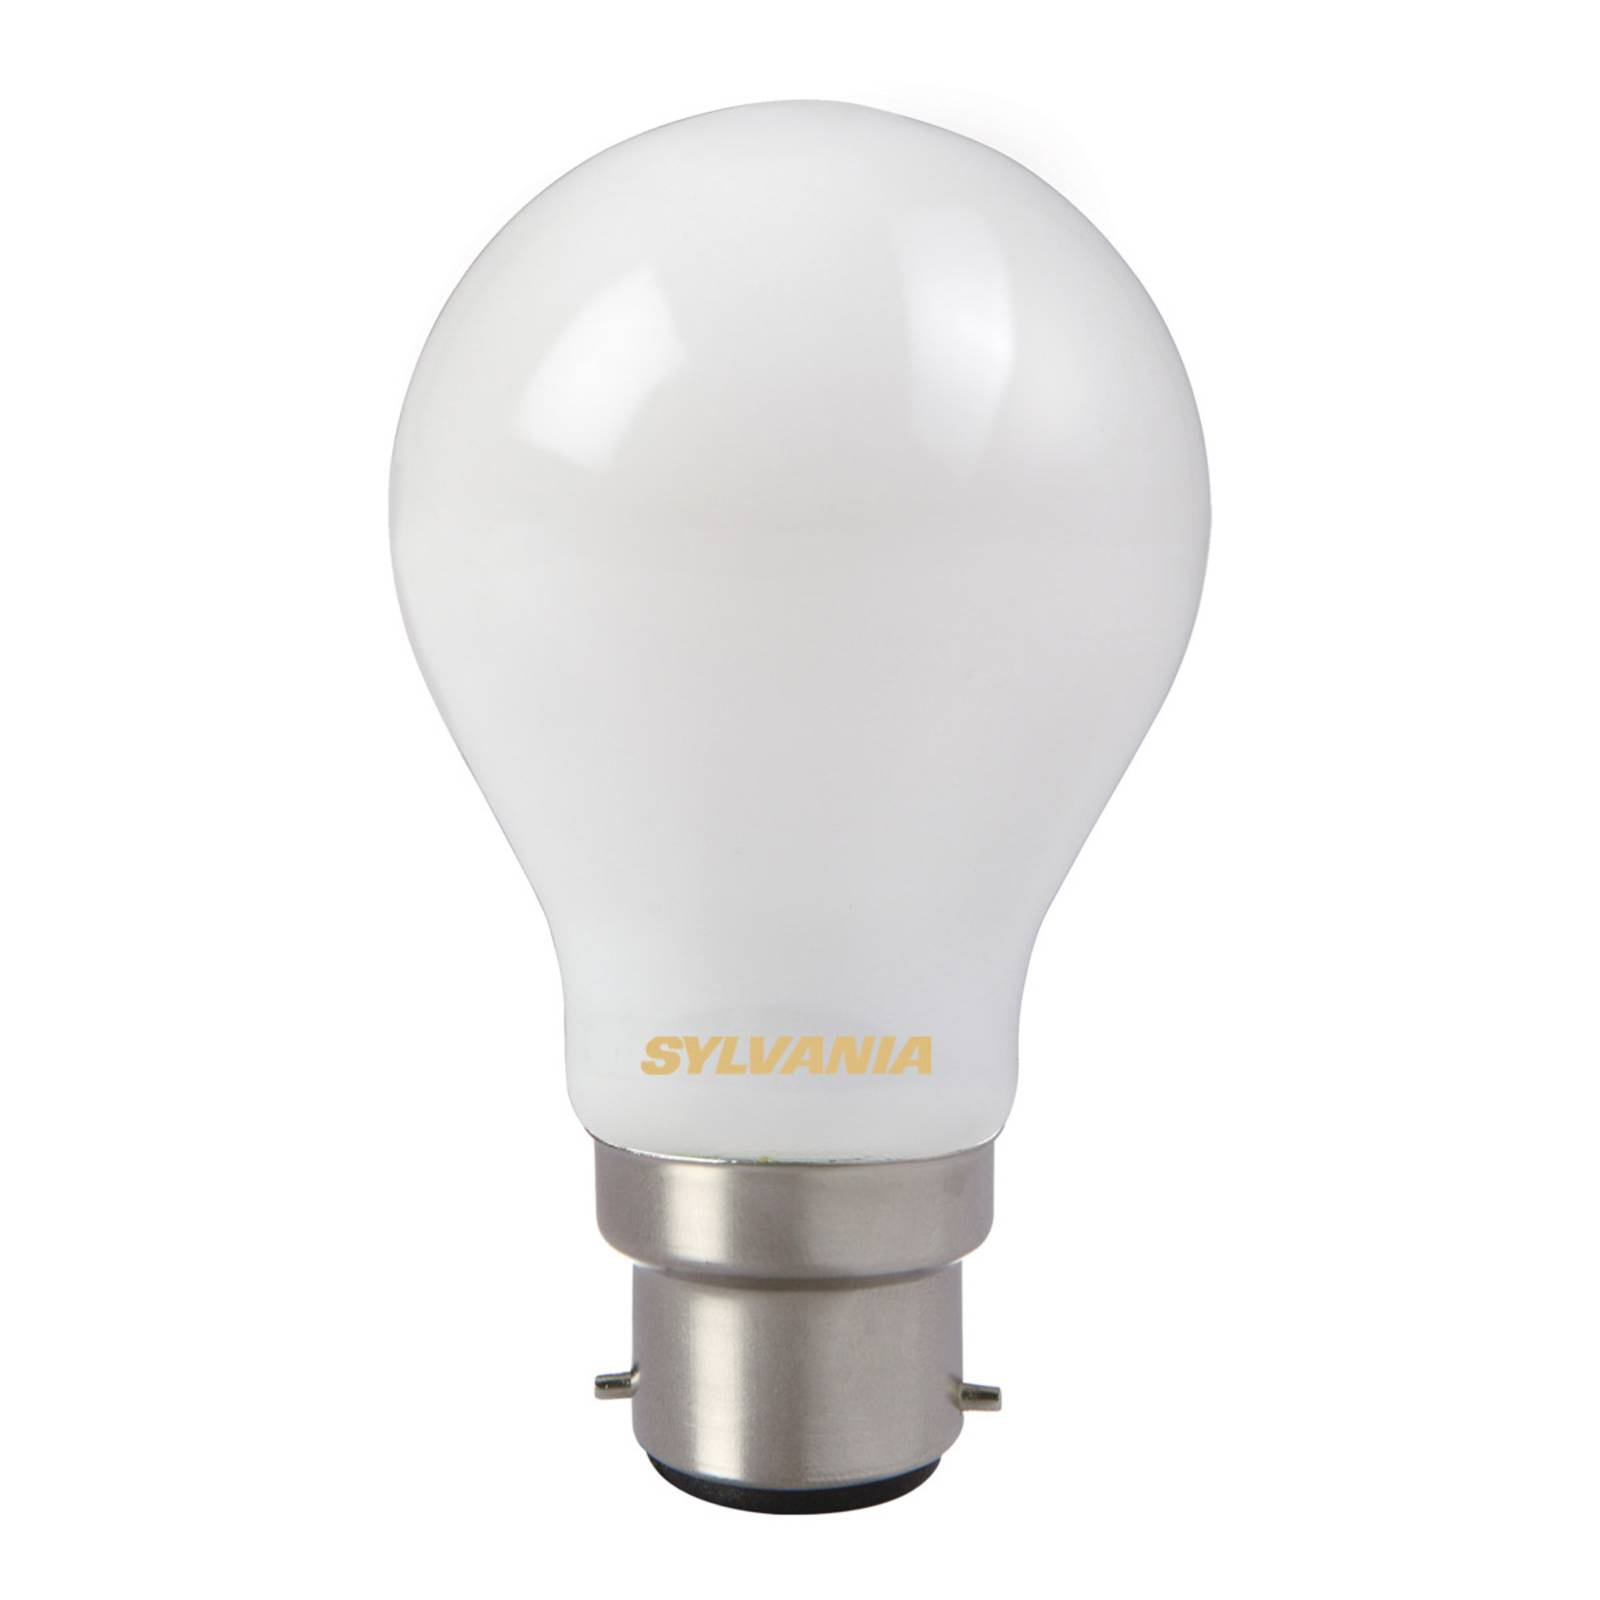 Sylvania Ampoule LED, B22, 7 W, 827, satinée, non dimmable